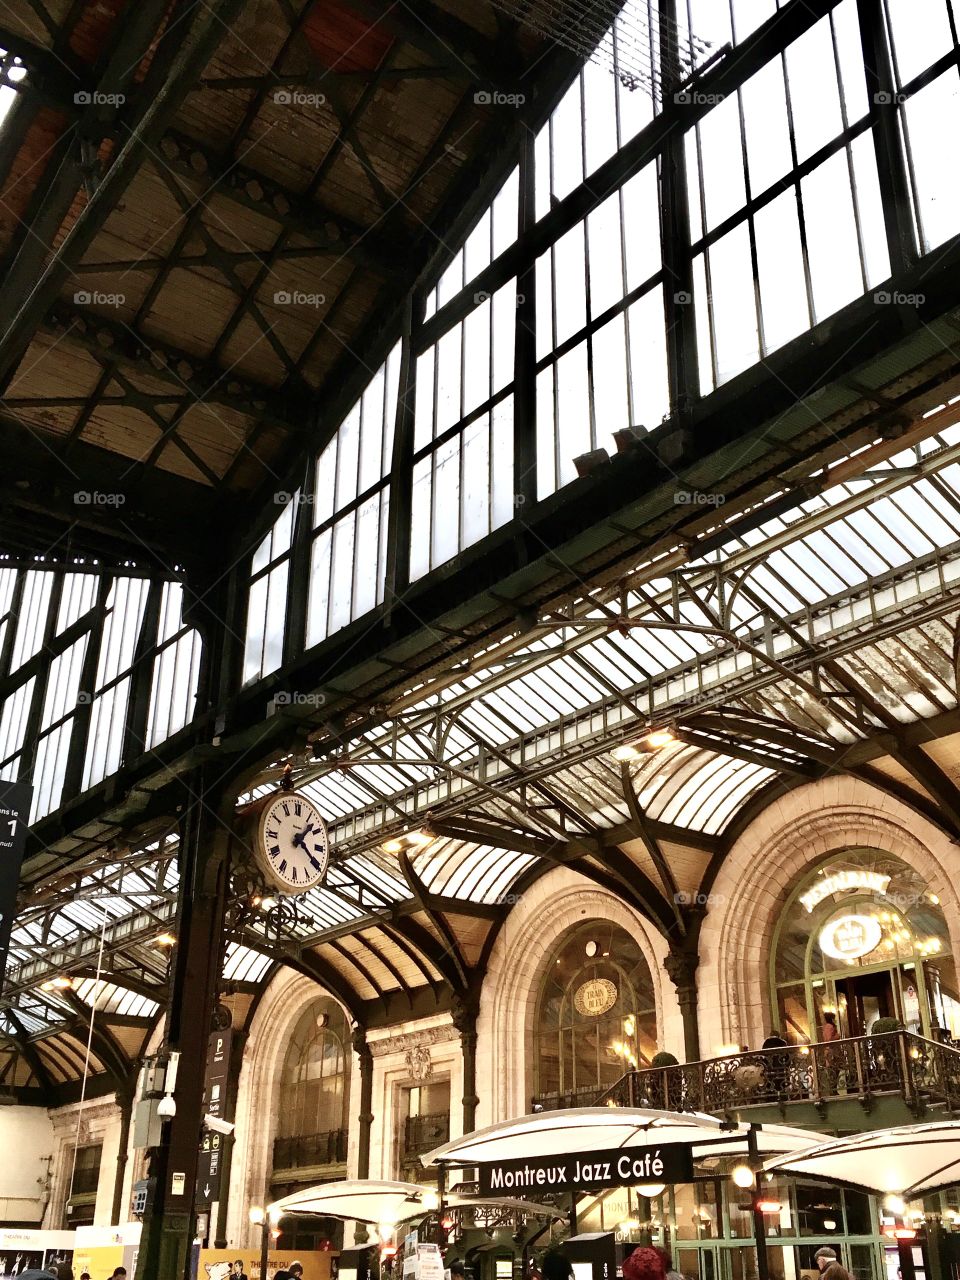 Gare de Lyon 